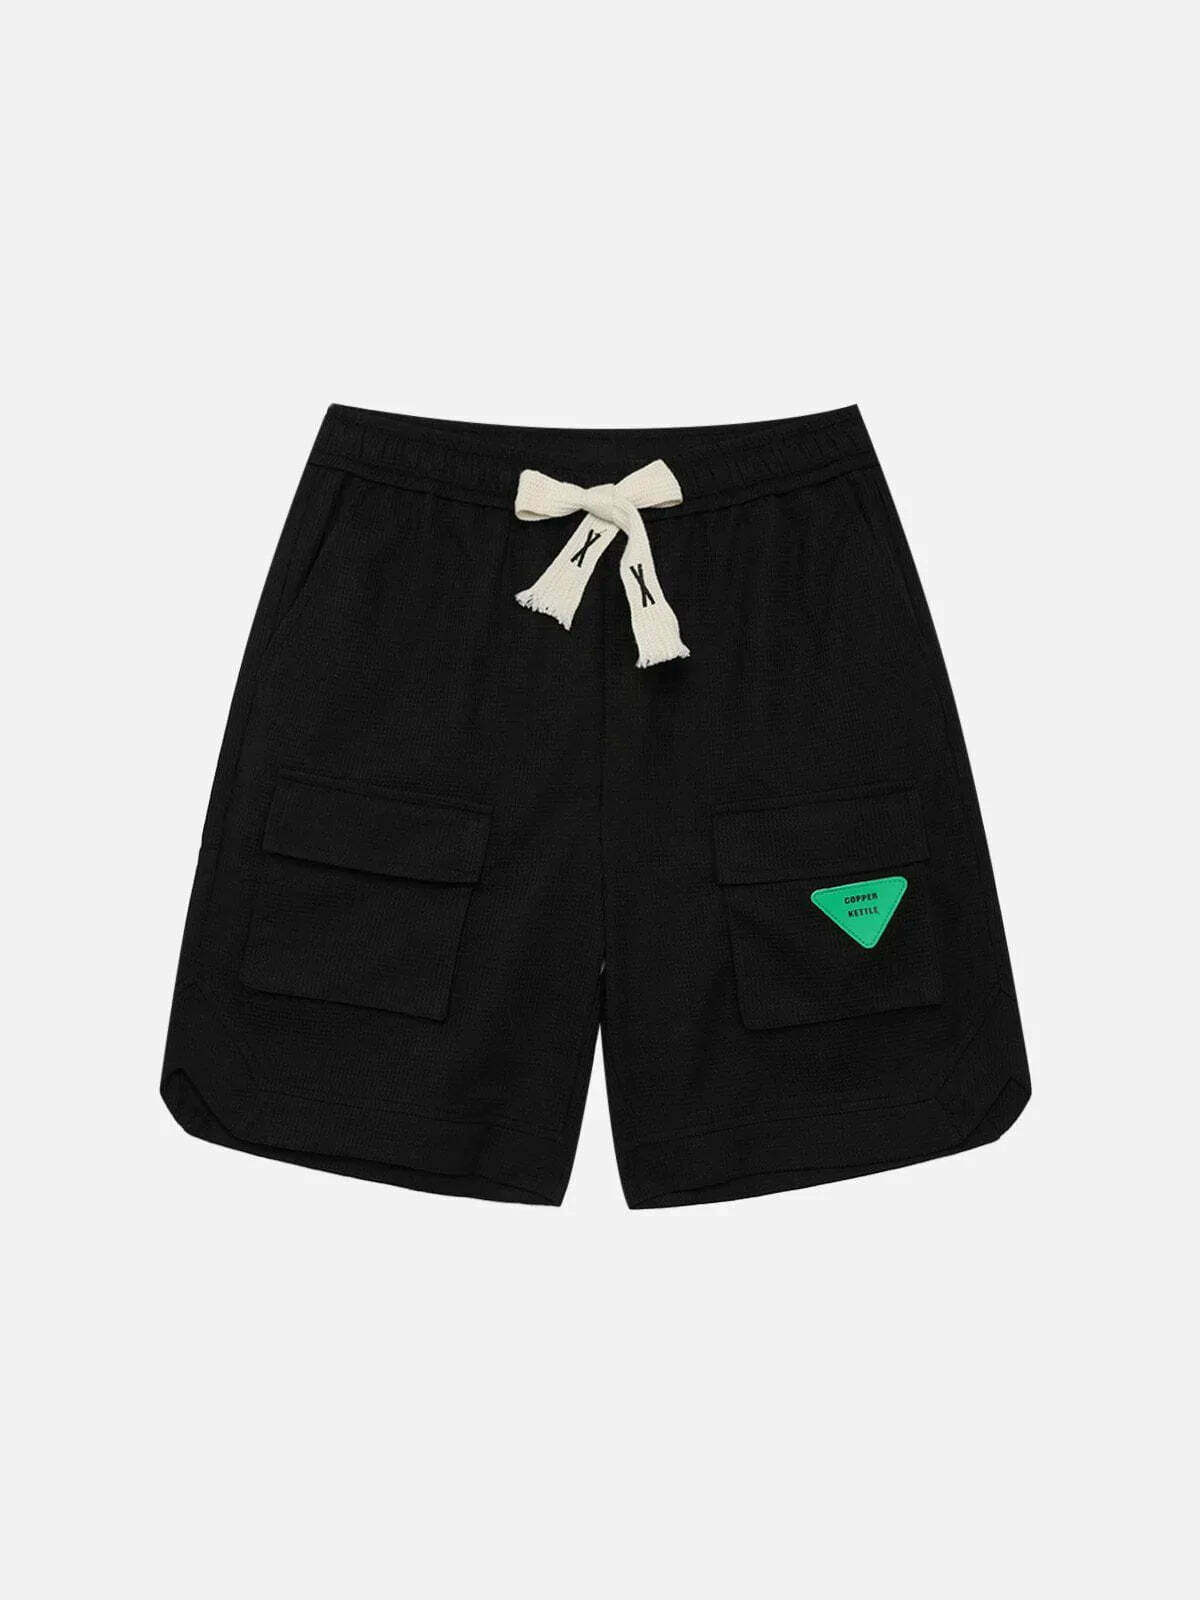 drawstring cargo shorts innovative streetwear essential 6578